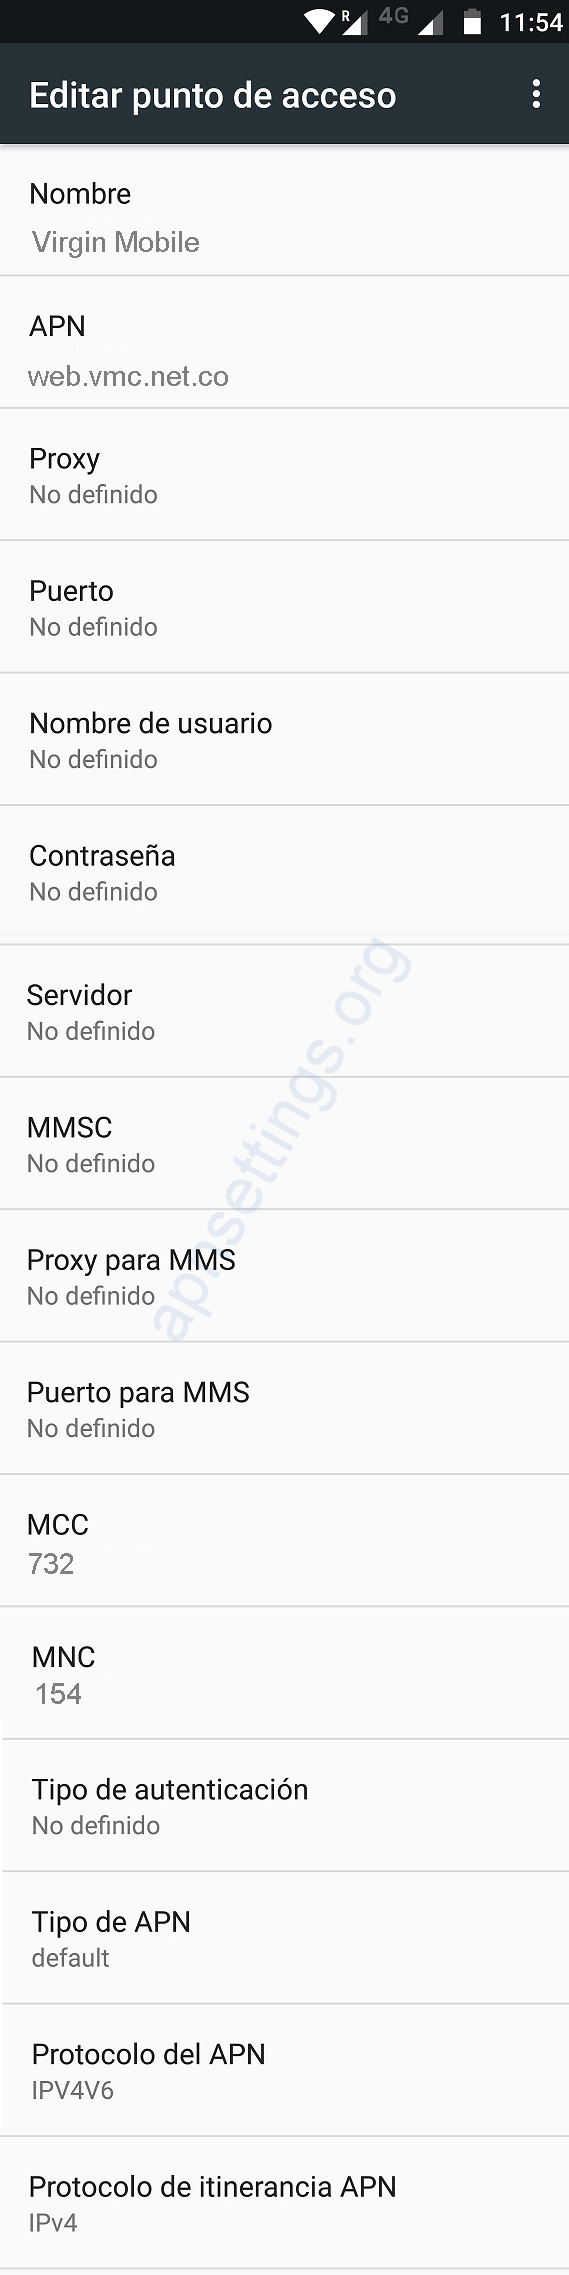 Configurar APN 4G de Virgin Mobile Colombia para Android